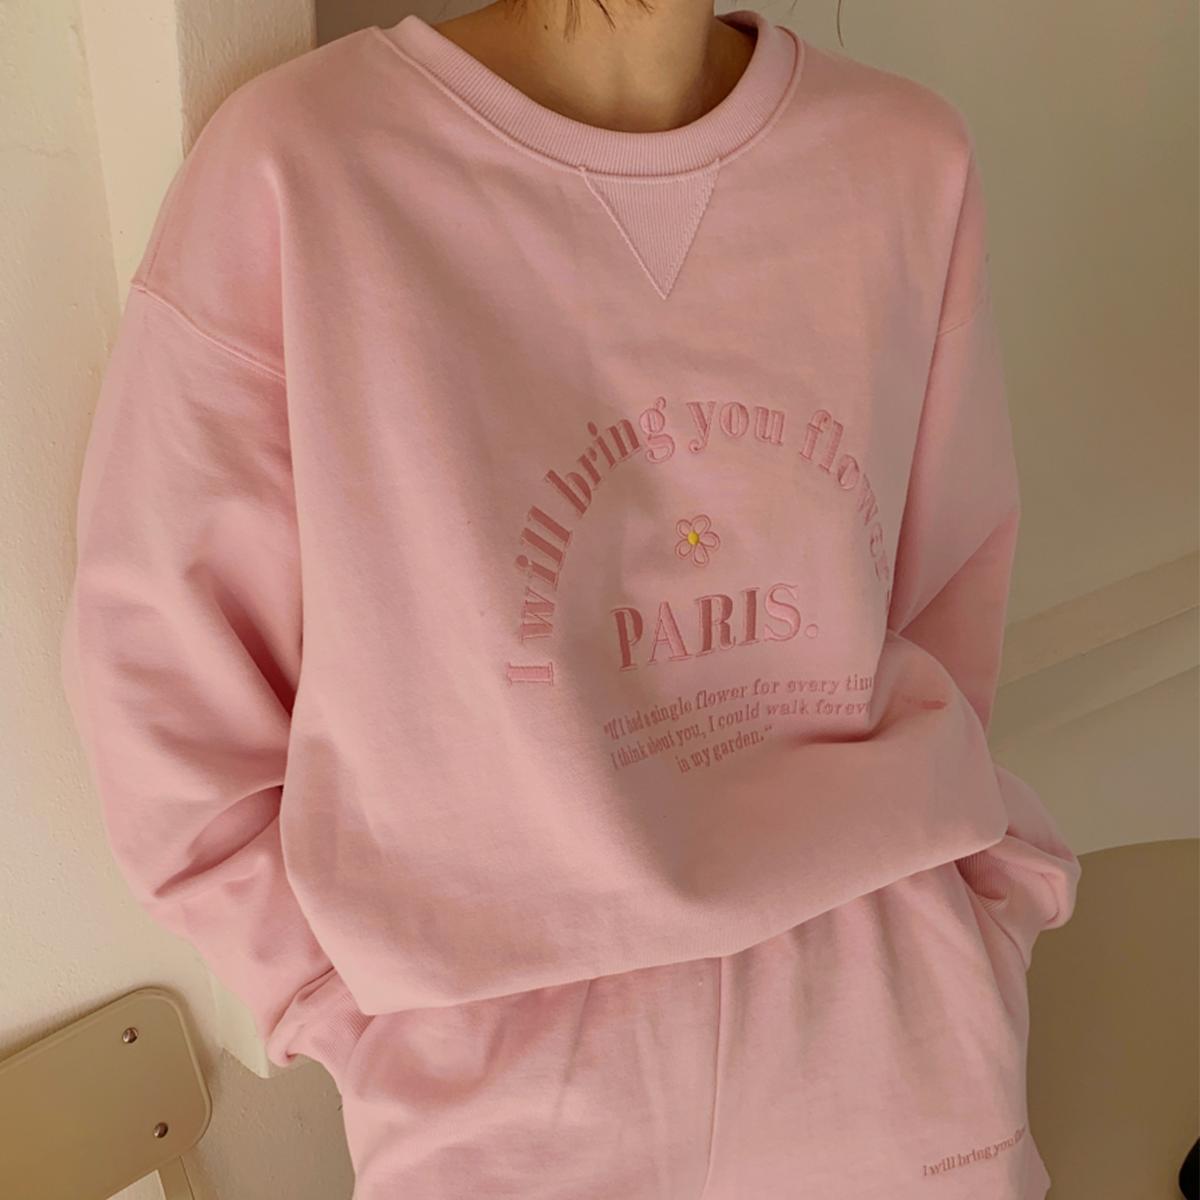 Rêve Sweatshirt (Pink)